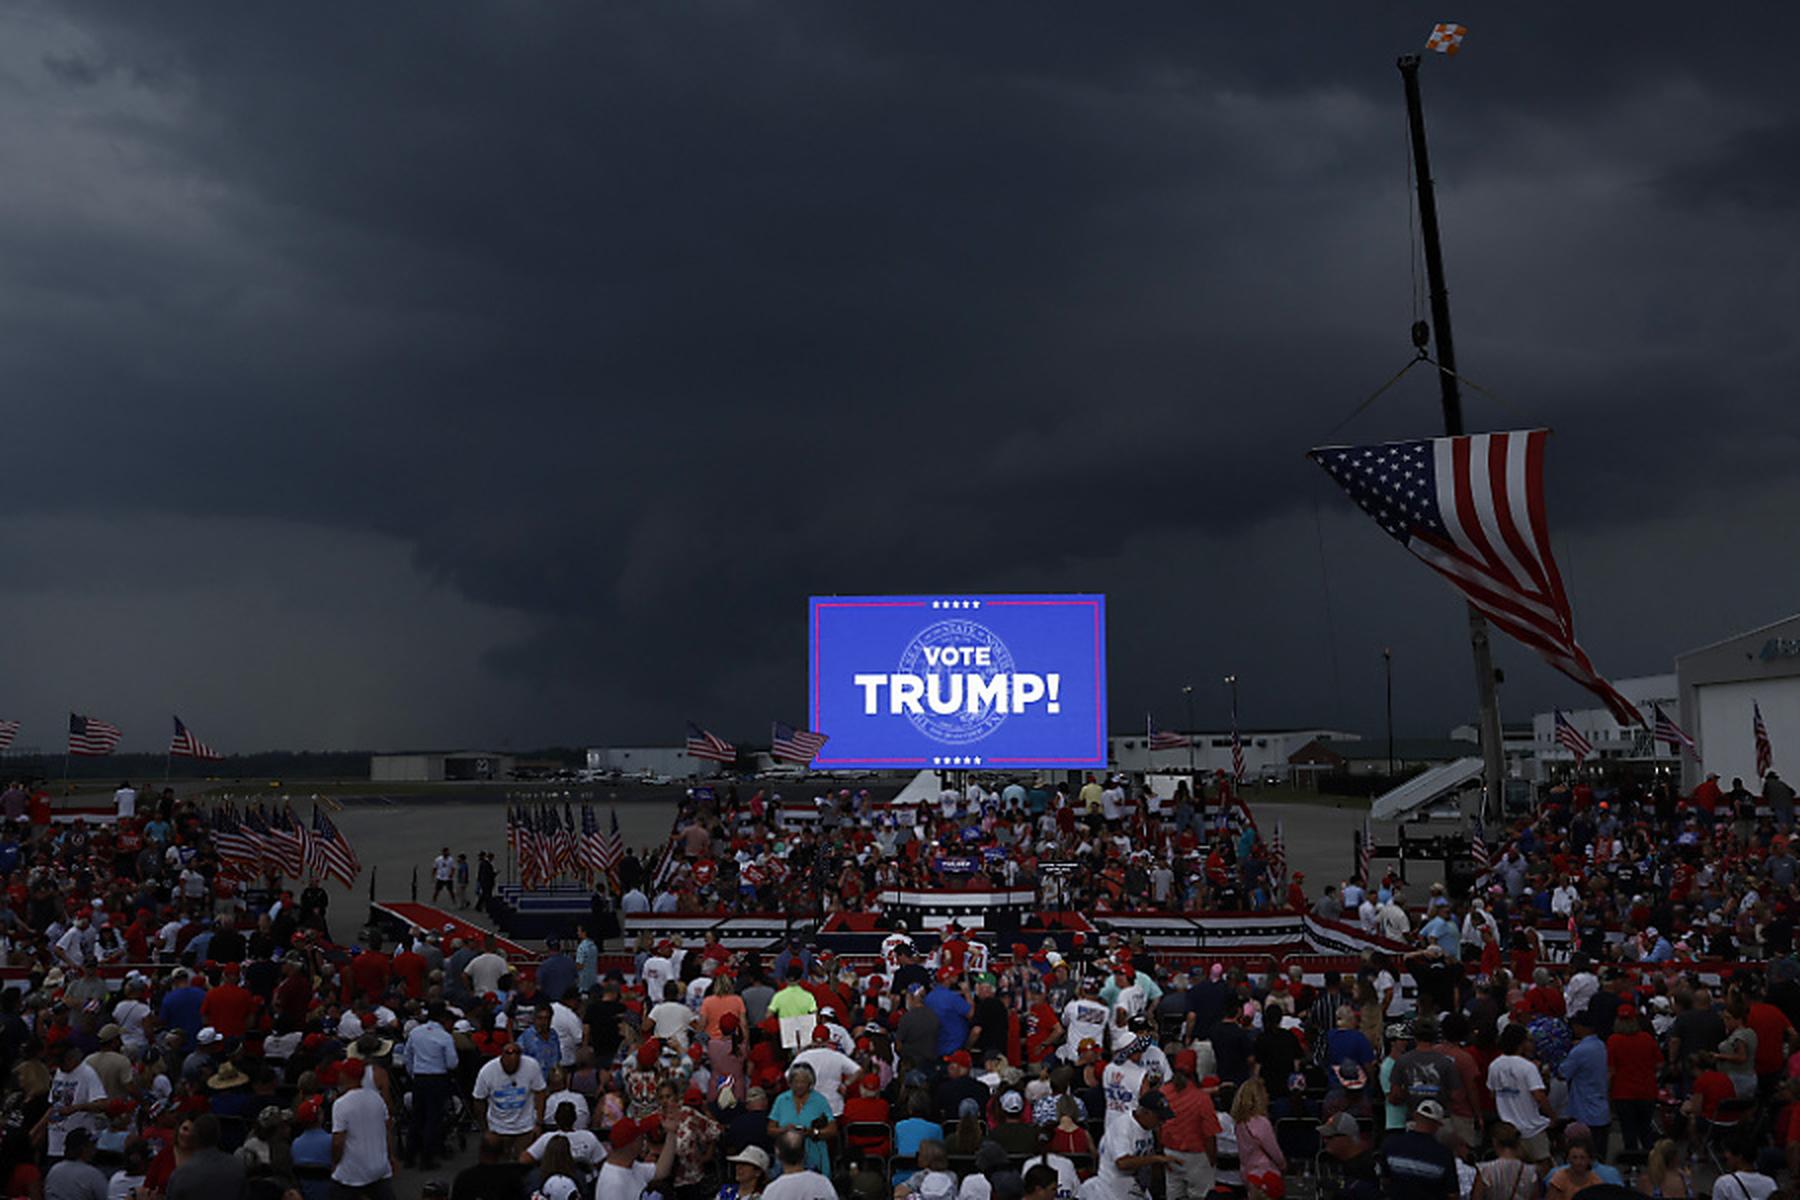 Washington: Trump verschiebt Wahlkampfveranstaltung wegen Sturmes